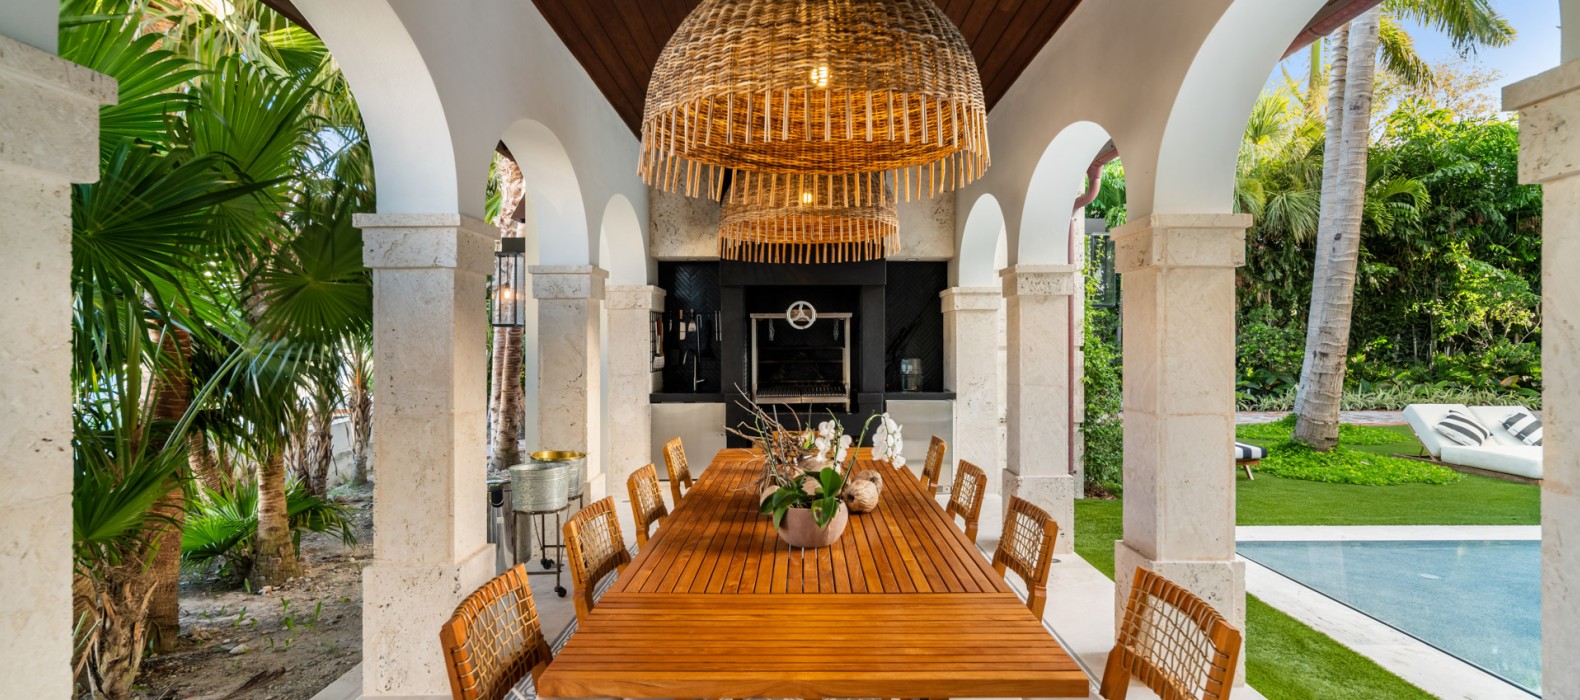 Exterior dining area of Villa Elisa in Miami